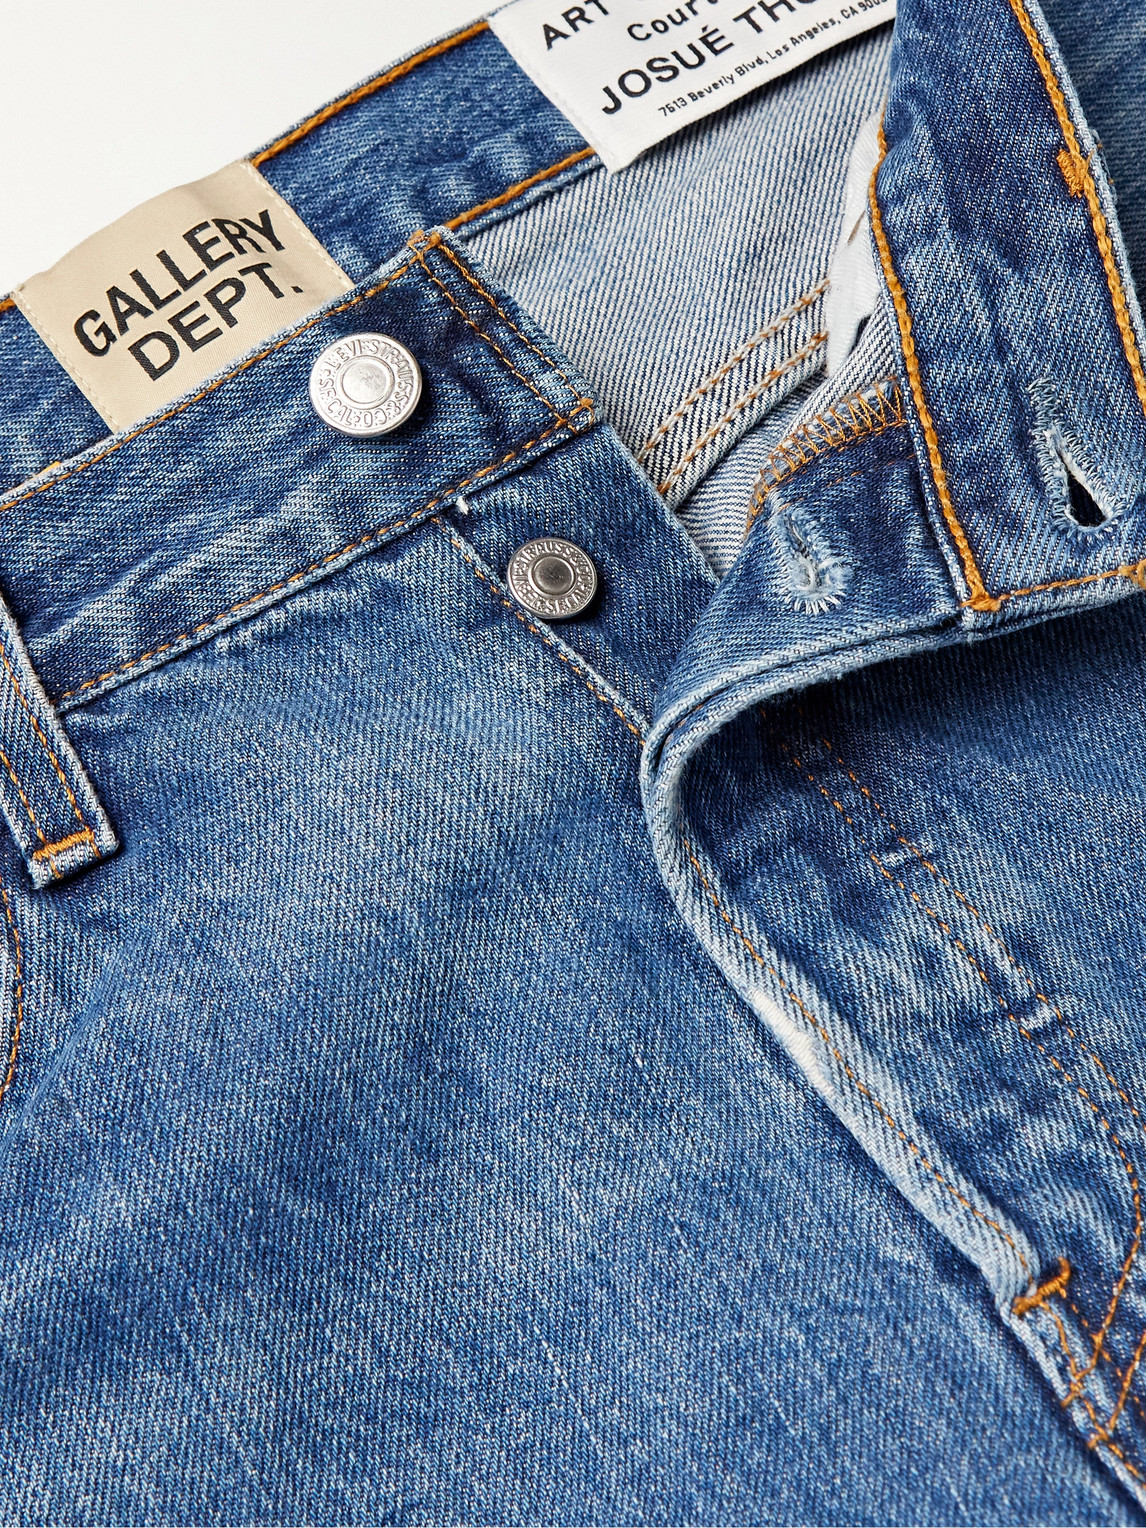 Gallery Dept. Slim-fit Distressed Denim Jeans In Blau | ModeSens